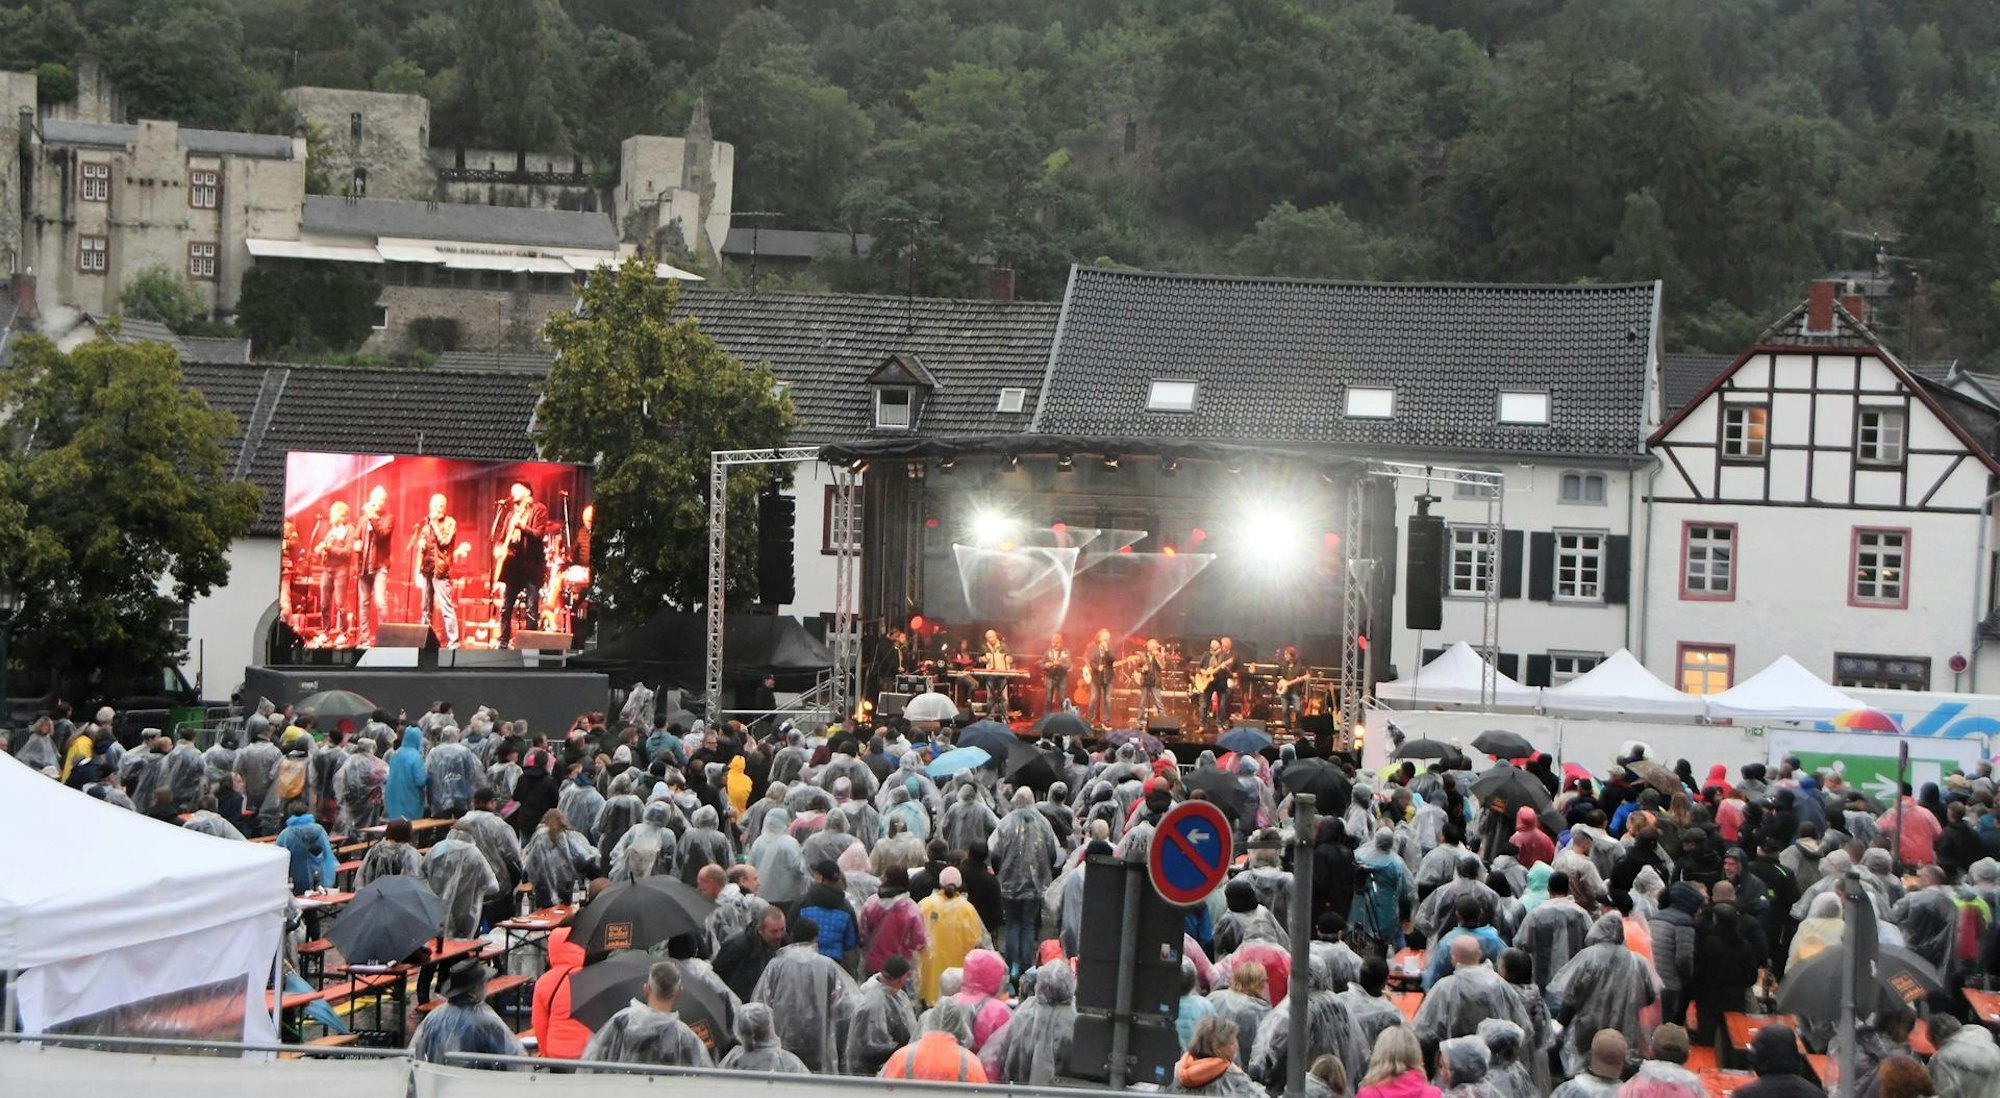 Mehrere Hundert Zuschauer waren trotz des miserablen Wetters auf den Klosterplatz in Bad Münstereifel gekommen, um sich für ein paar Stunden eine Auszeit zu gönnen.